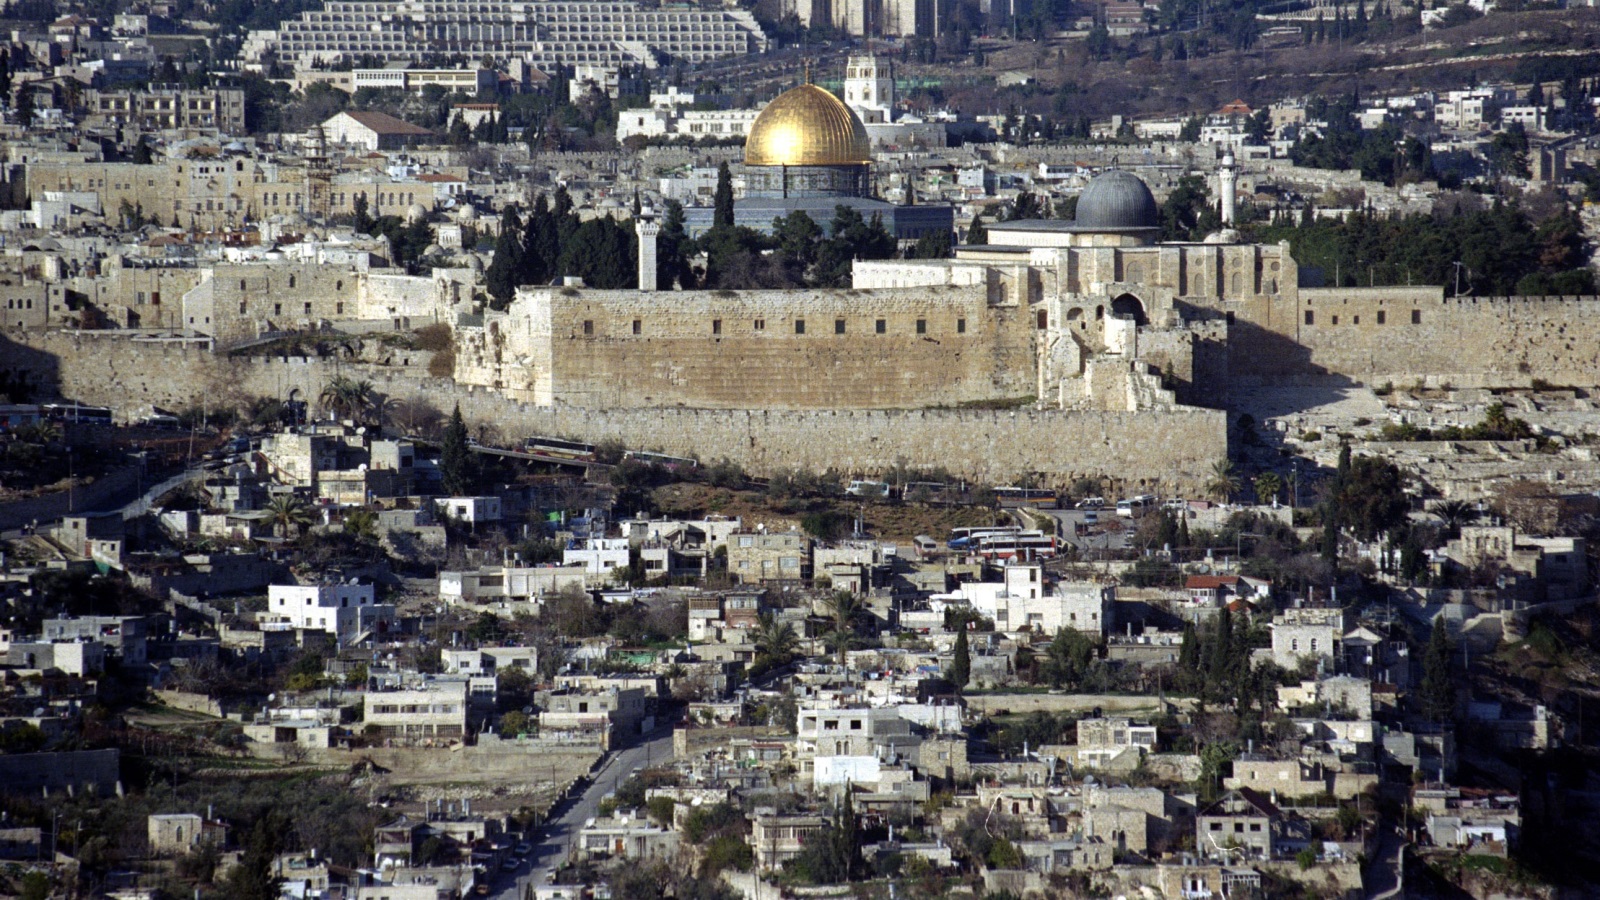 تعتبر الإجراءات والممارسات الإسرائيلية في مدينة القدس، وقرار حكومة إسرائيل بإغلاق المسجد الأقصى المبارك ومنع إقامة الصلاة فيه، سابقة جرمية خطيرة تأتي في إطار العقوبات الجماعية